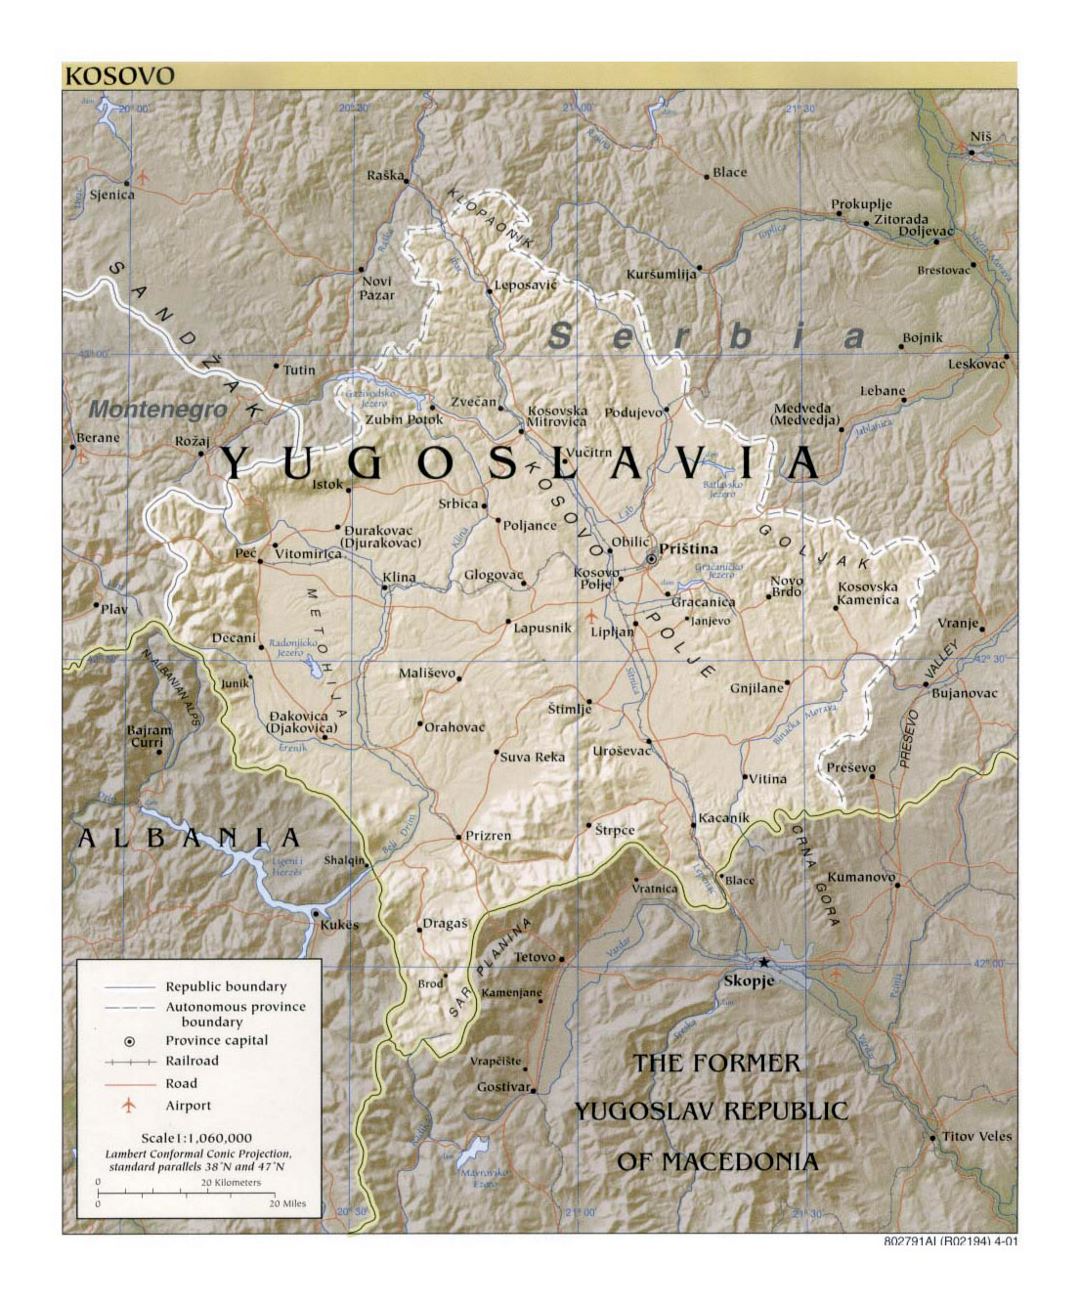 Mapa político detallado de Kosovo con relieves, carreteras, ferrocarriles, ciudades y aeropuertos - 2001